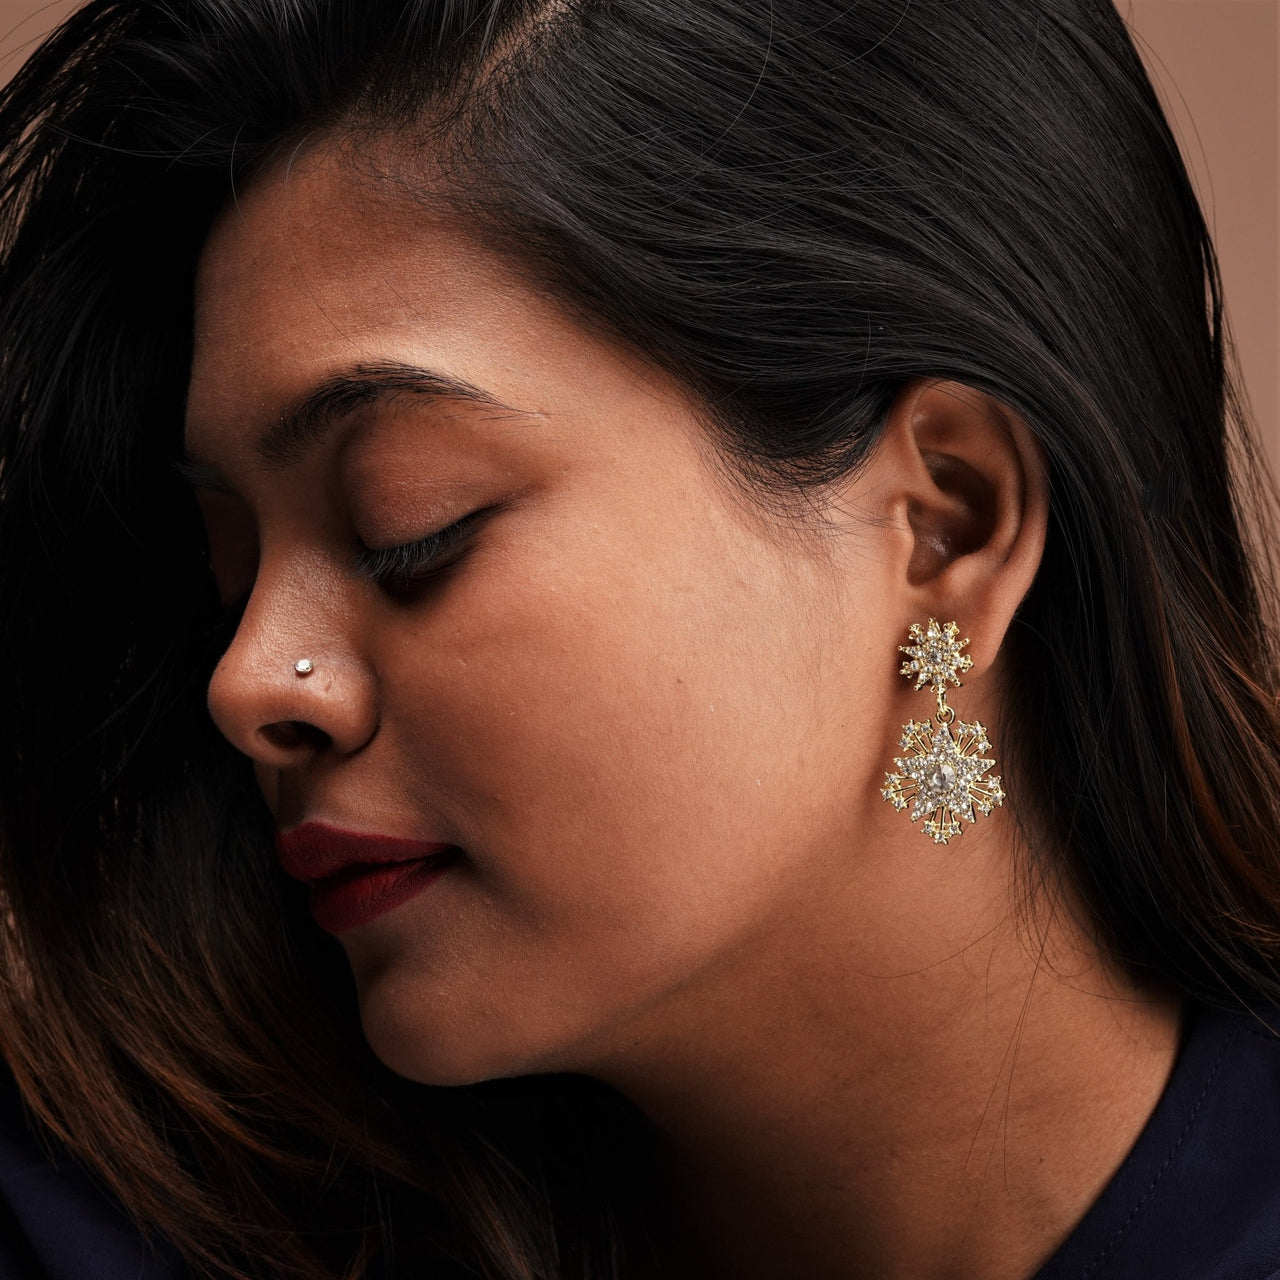 A stunning star design earring